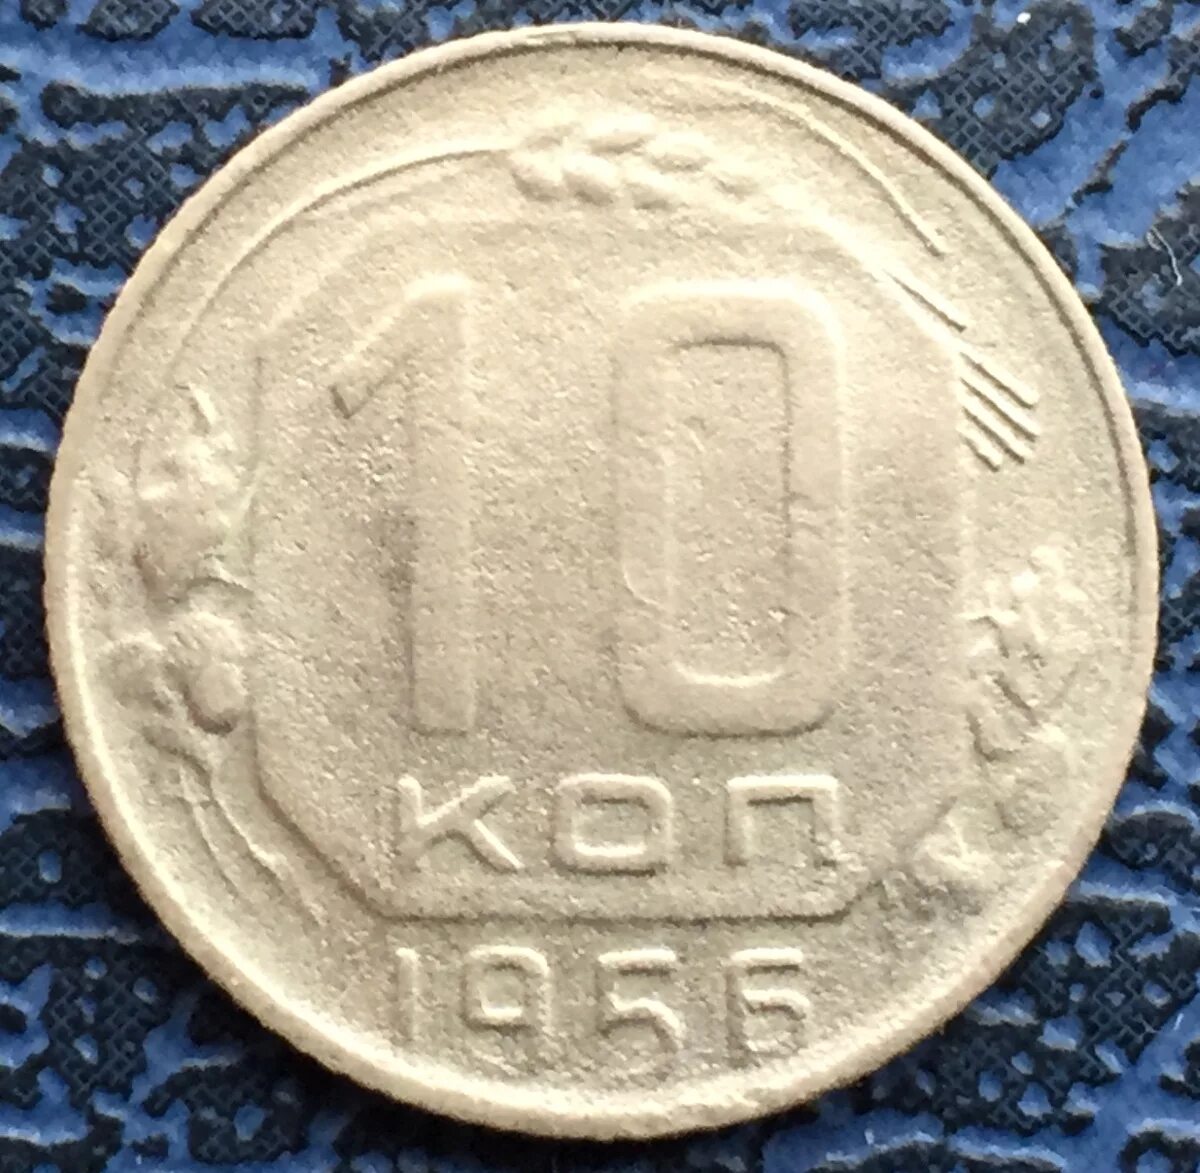 1956 год монеты цена. Монета 15 копеек 1957. 10 Копеек 1956 года. 10 Копеек 1935 года. Монета СССР 10 копеек 1956 год.